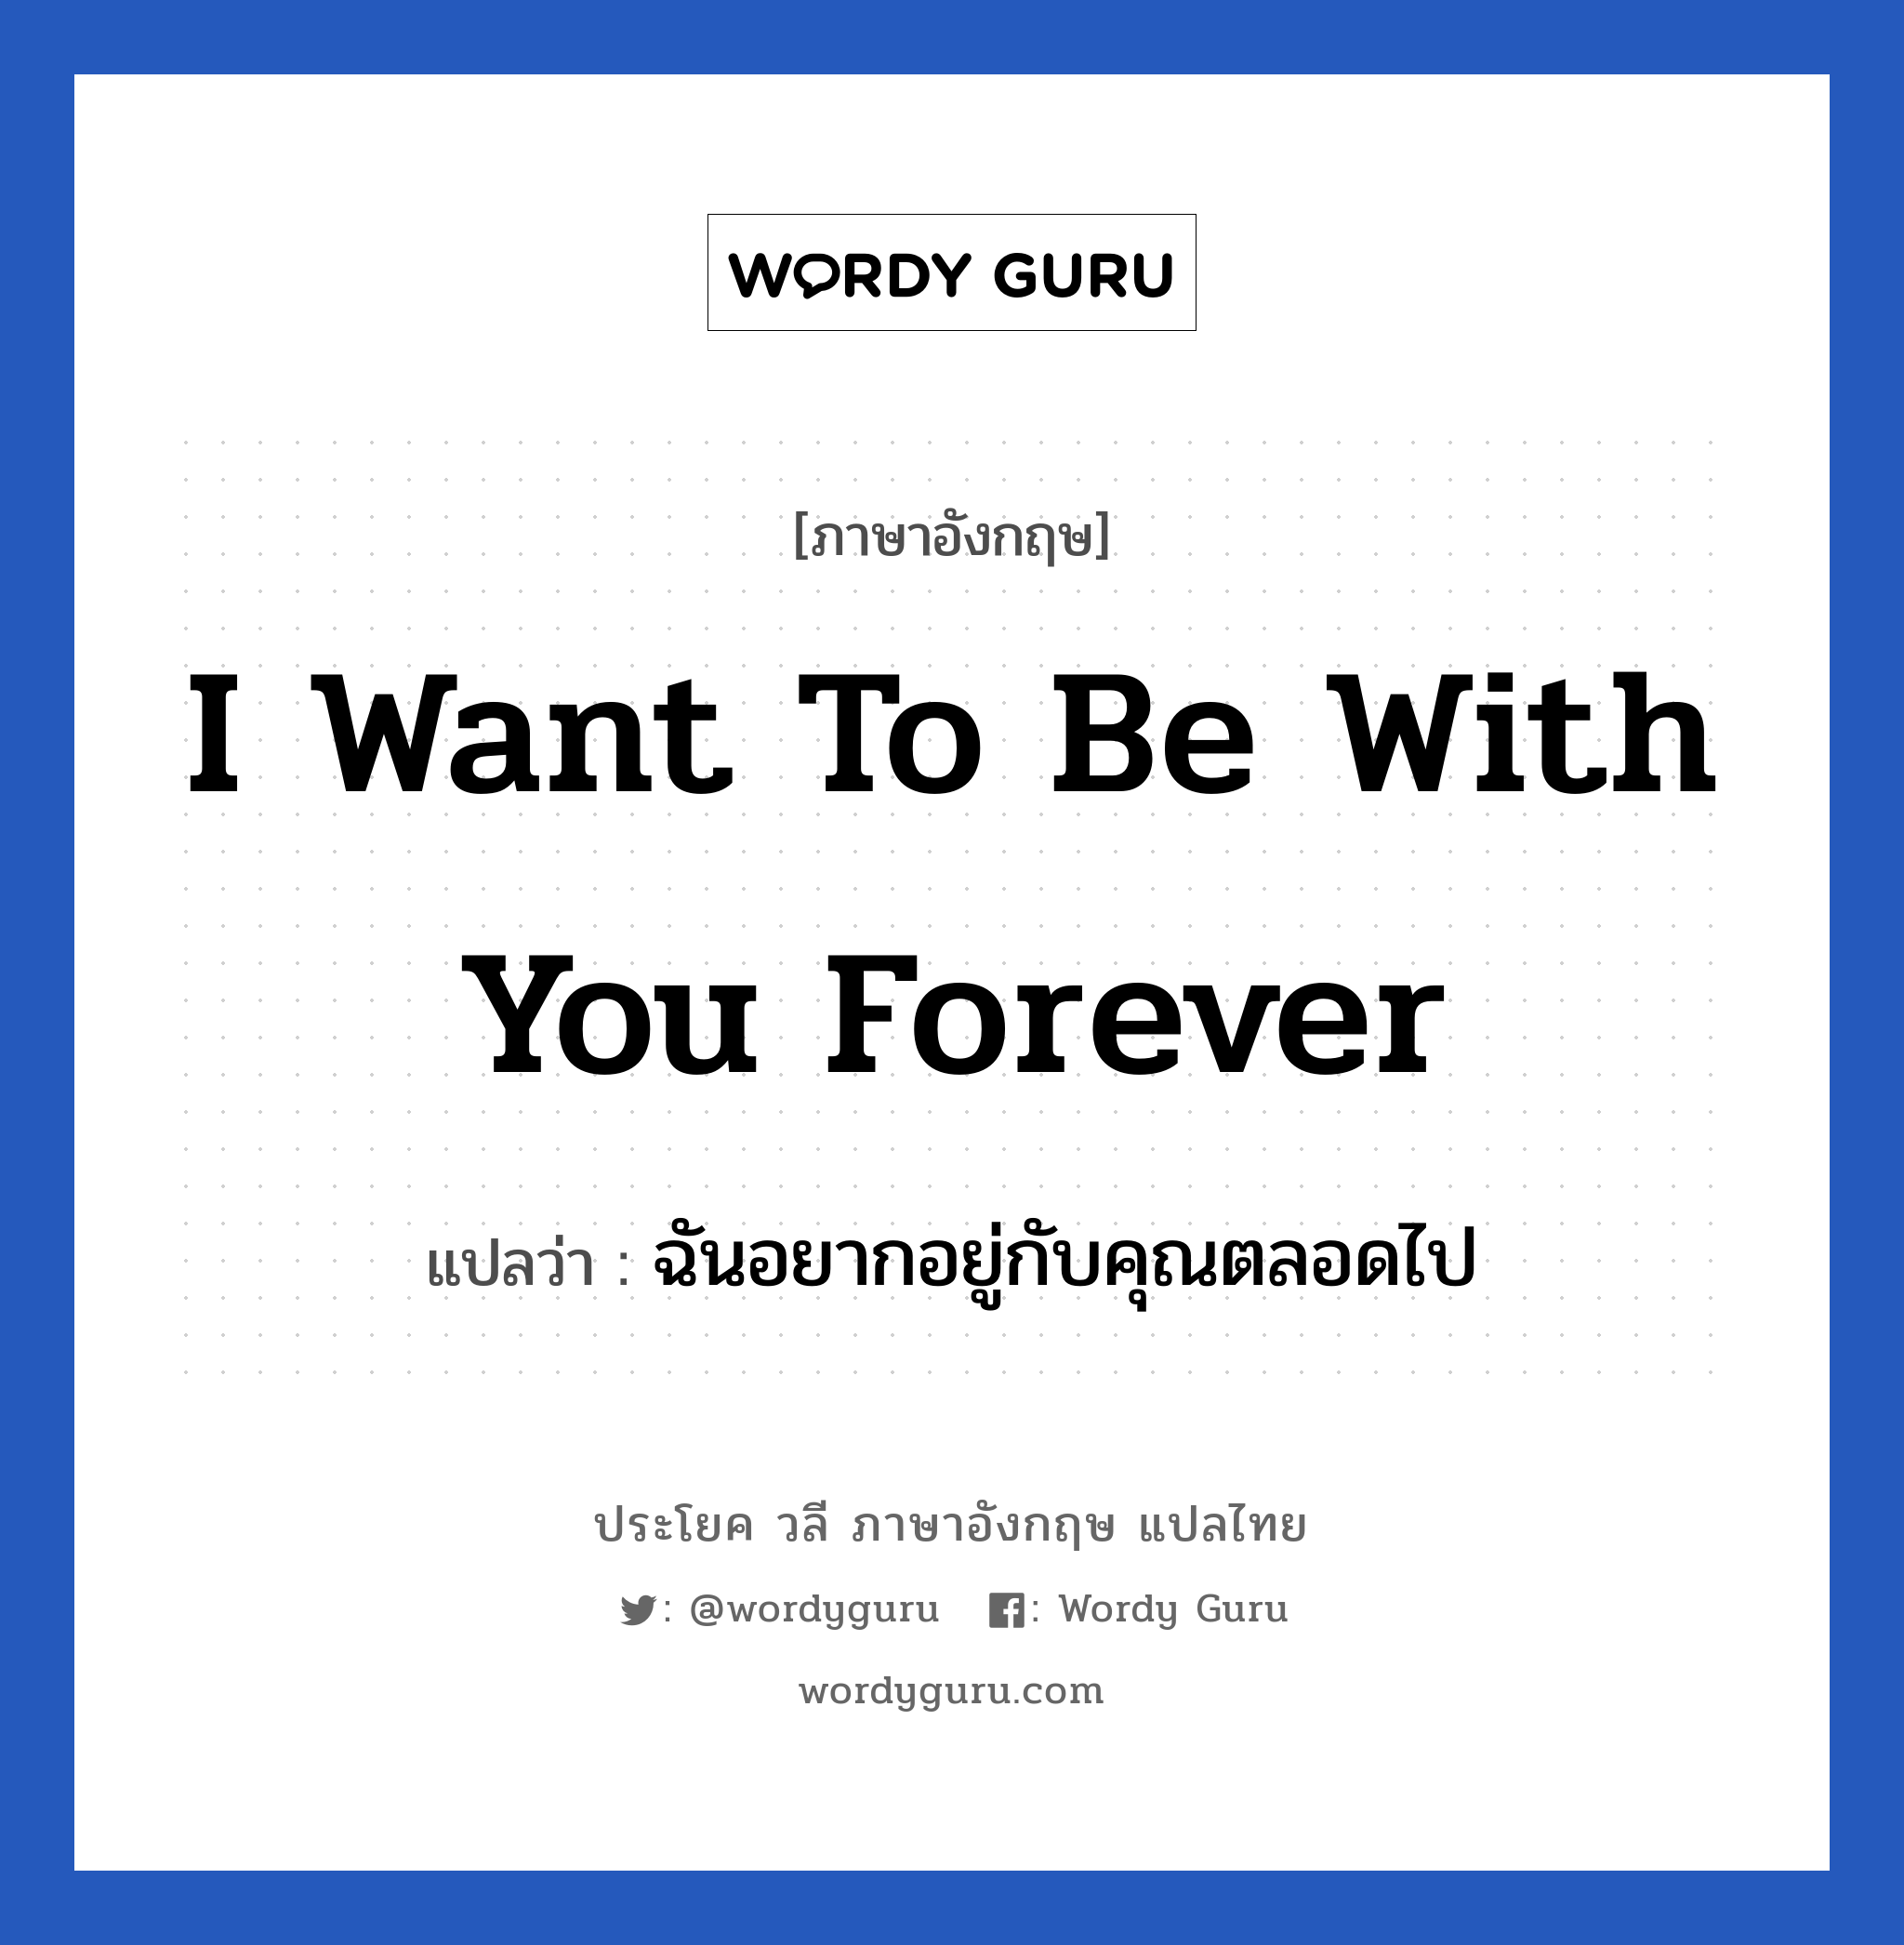 ฉันอยากอยู่กับคุณตลอดไป ภาษาอังกฤษ?, วลีภาษาอังกฤษ ฉันอยากอยู่กับคุณตลอดไป แปลว่า I want to be with you forever หมวด ความรัก